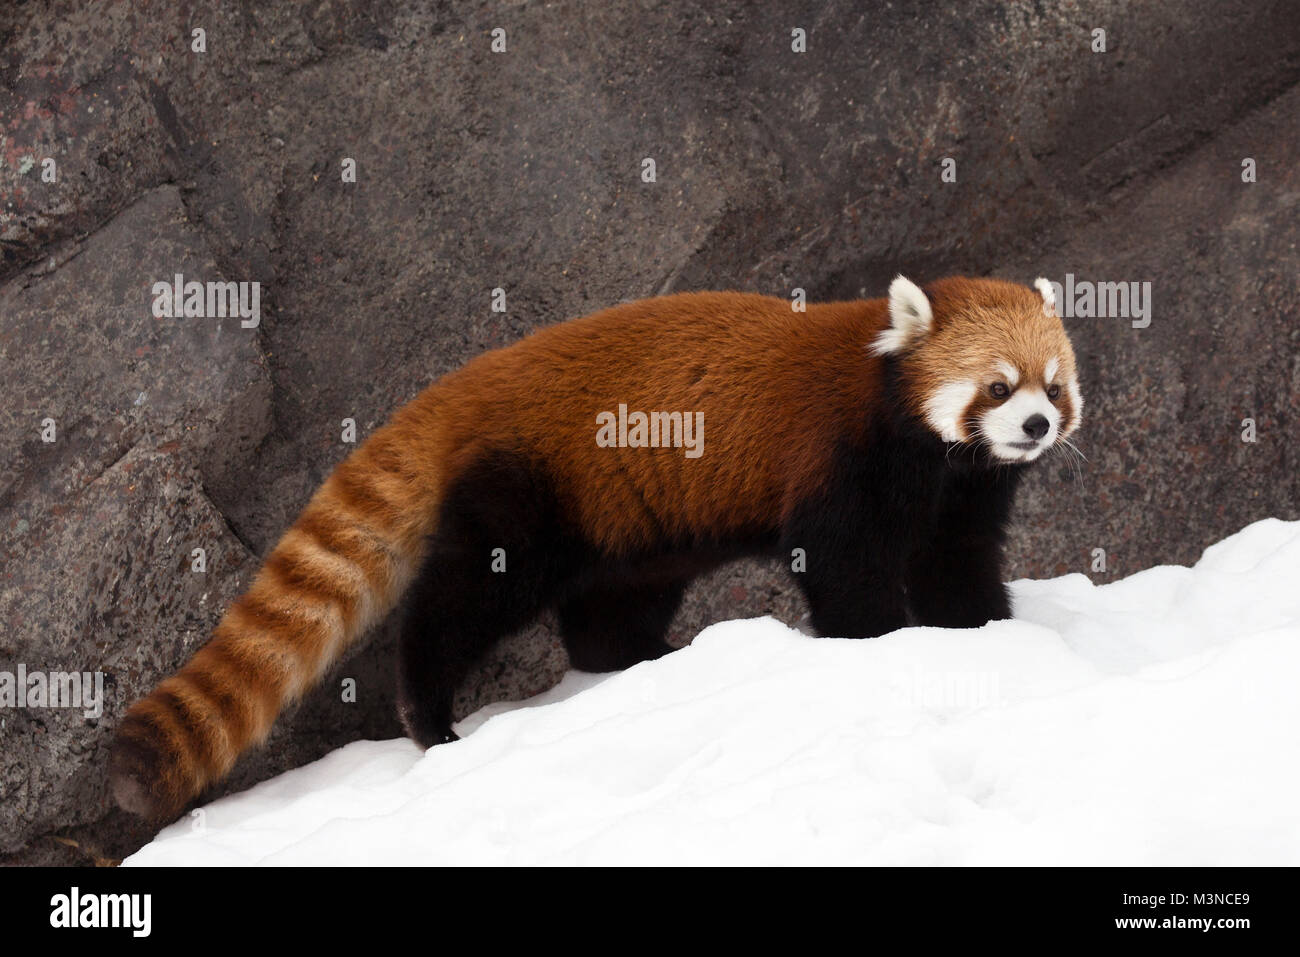 Le panda rouge (Ailurus fulgens) dans la neige Banque D'Images